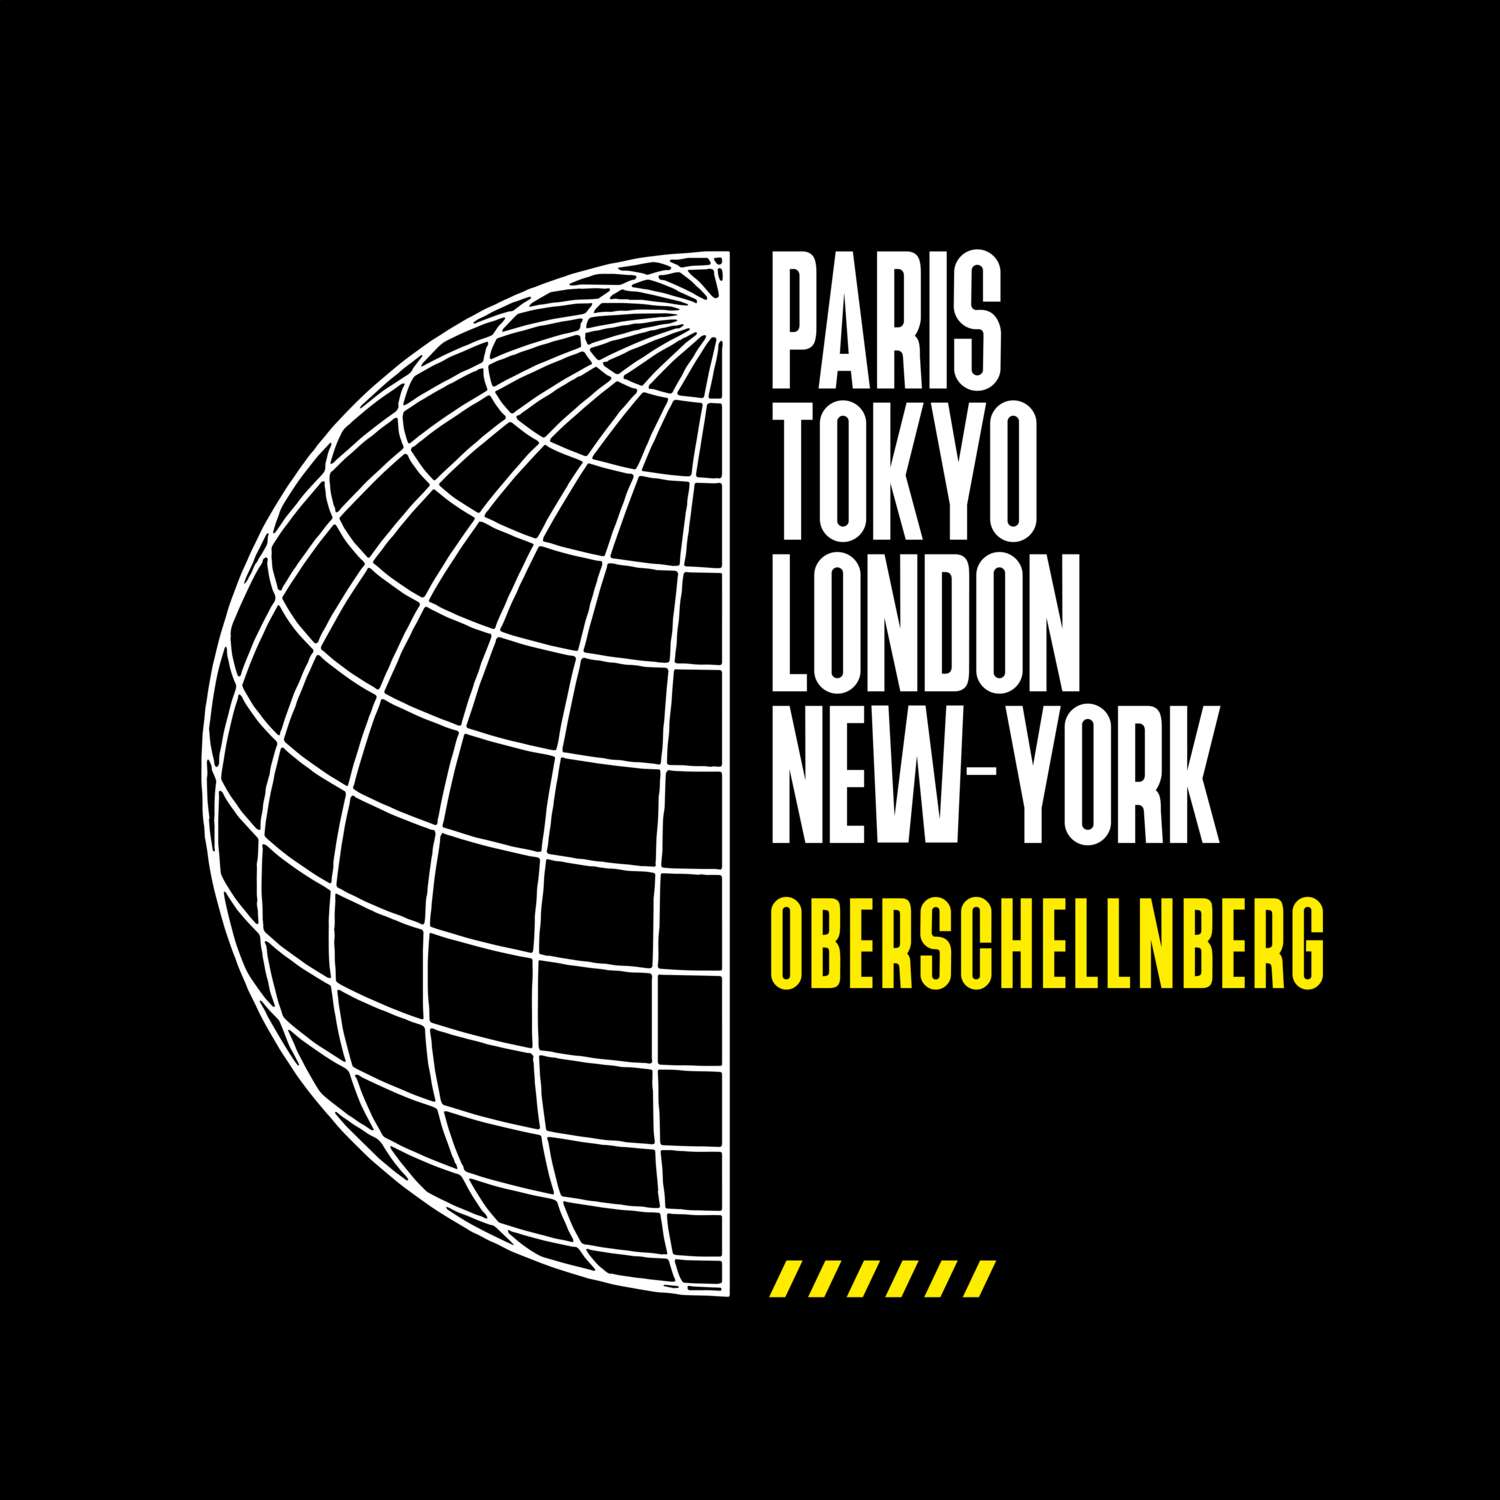 Oberschellnberg T-Shirt »Paris Tokyo London«